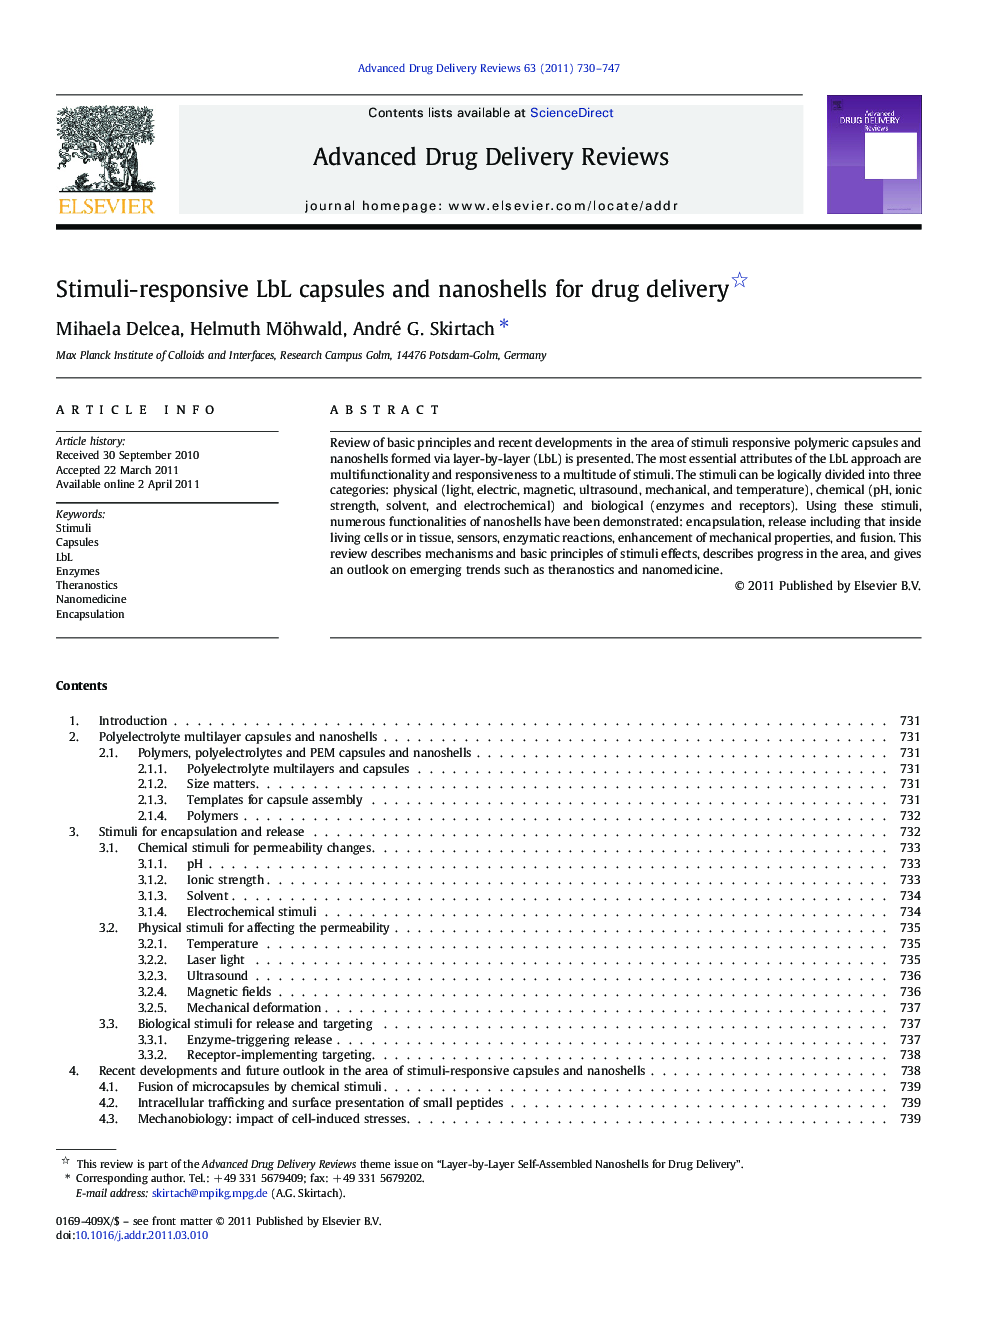 Stimuli-responsive LbL capsules and nanoshells for drug delivery 